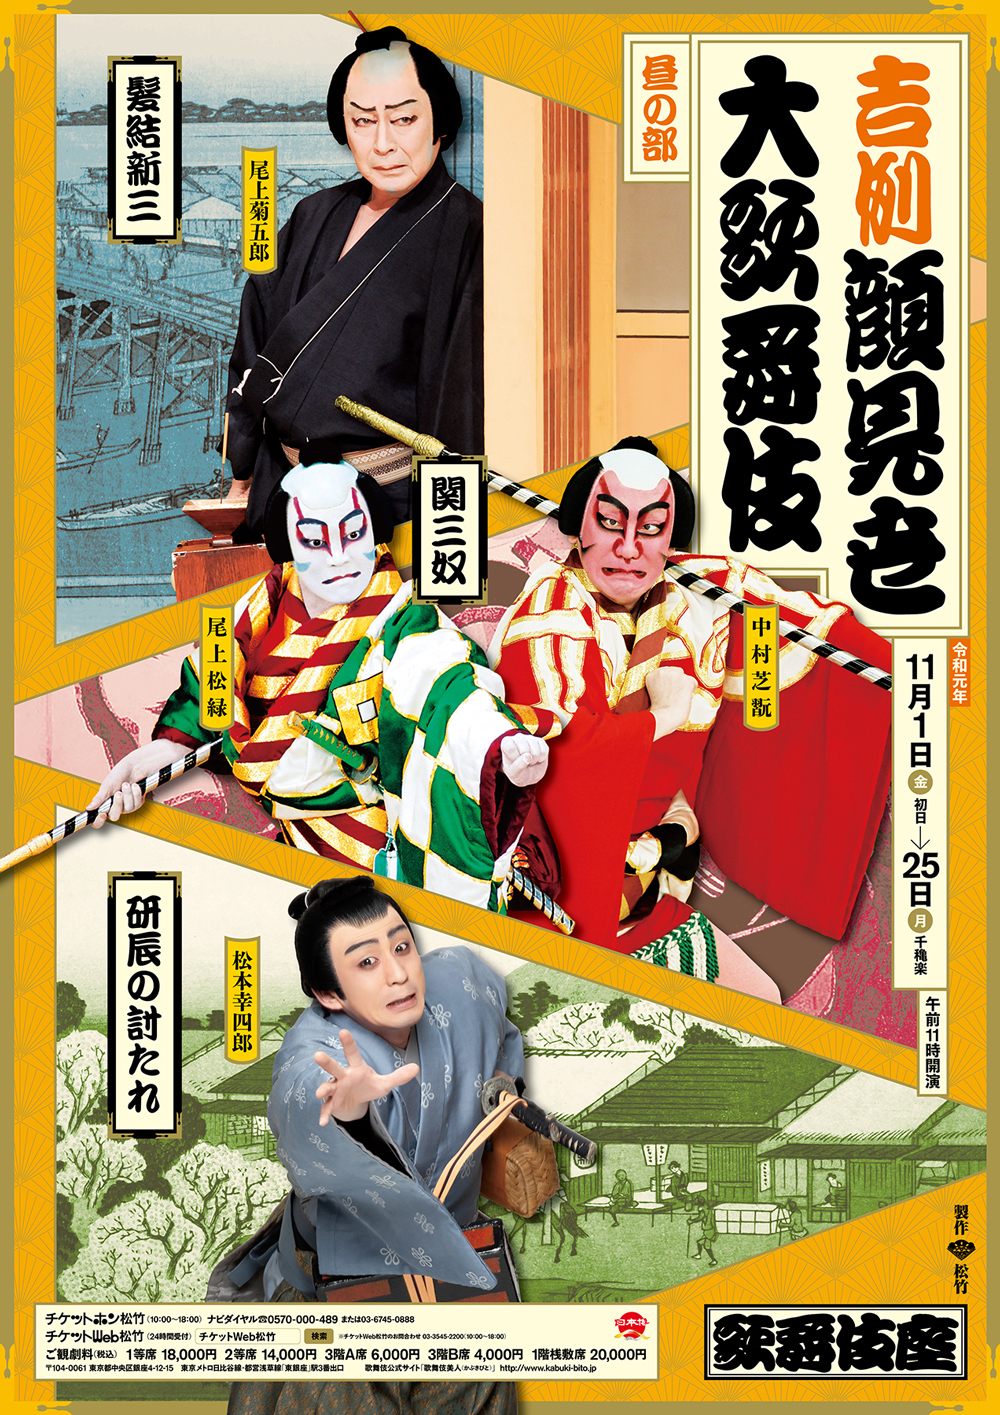 歌舞伎座「吉例顔見世大歌舞伎」特別ポスター公開